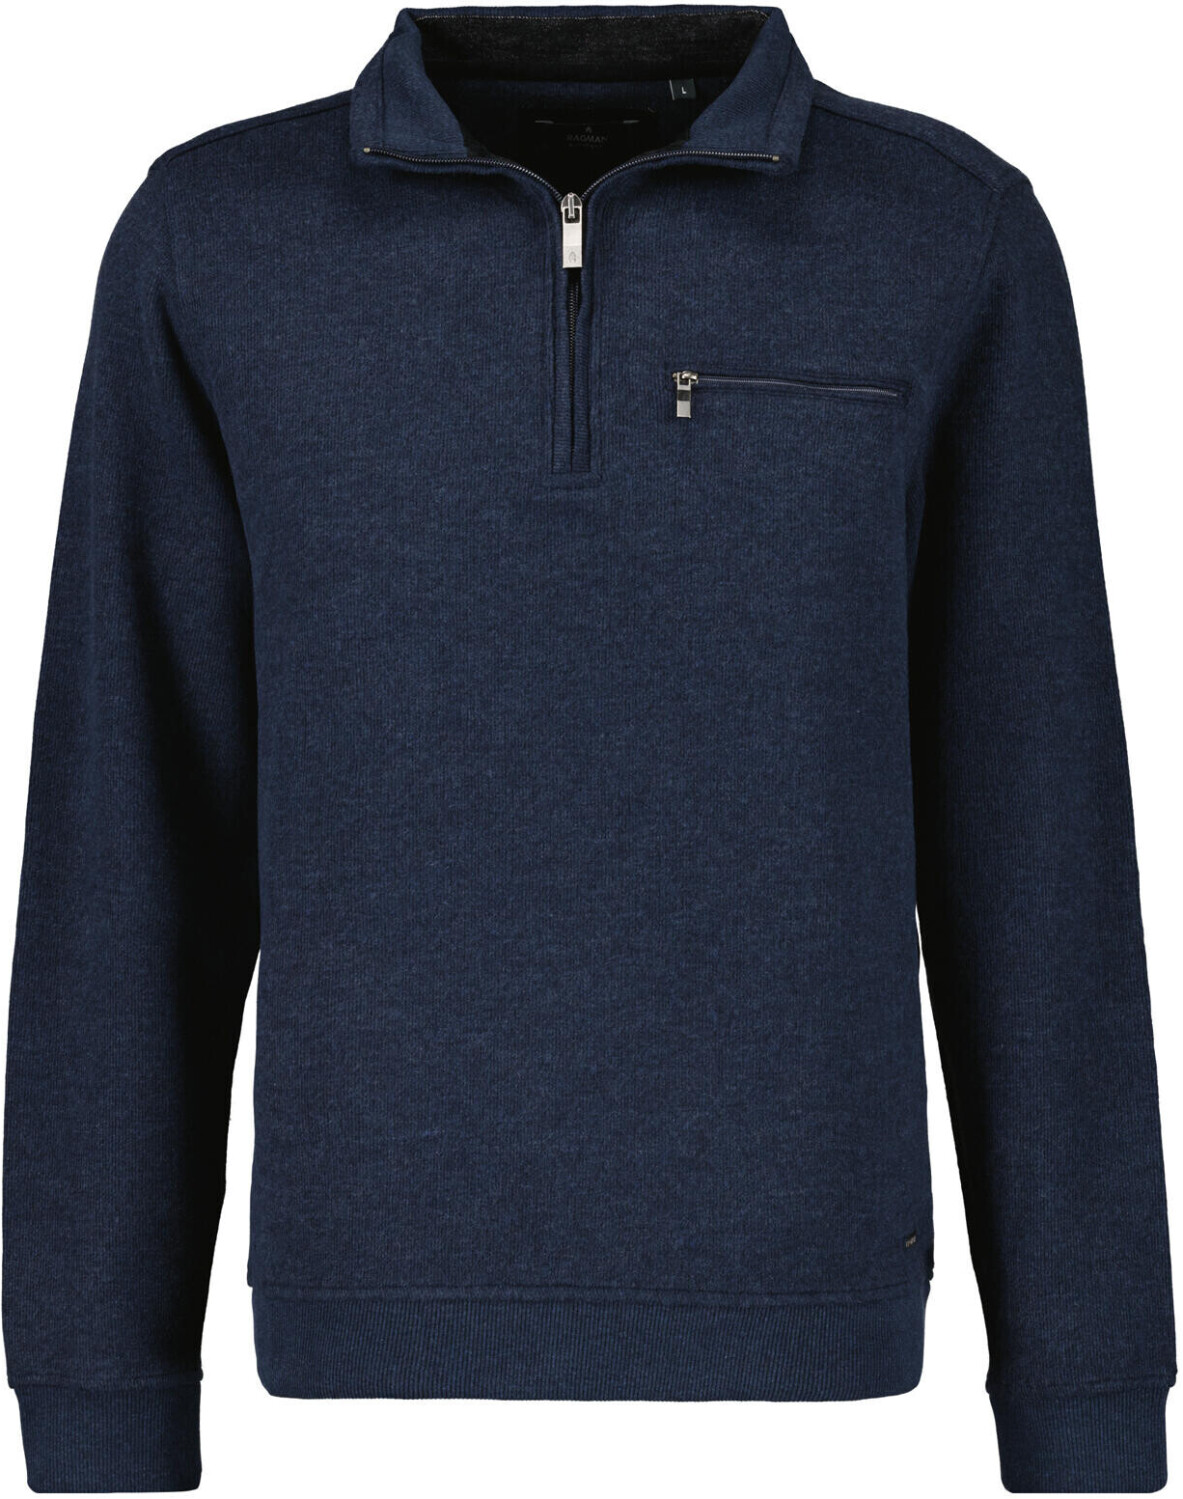 Ragman Sweatshirt mit Stehkragen und Zip (3412960-711) dunkelblau ab 62,95  € | Preisvergleich bei